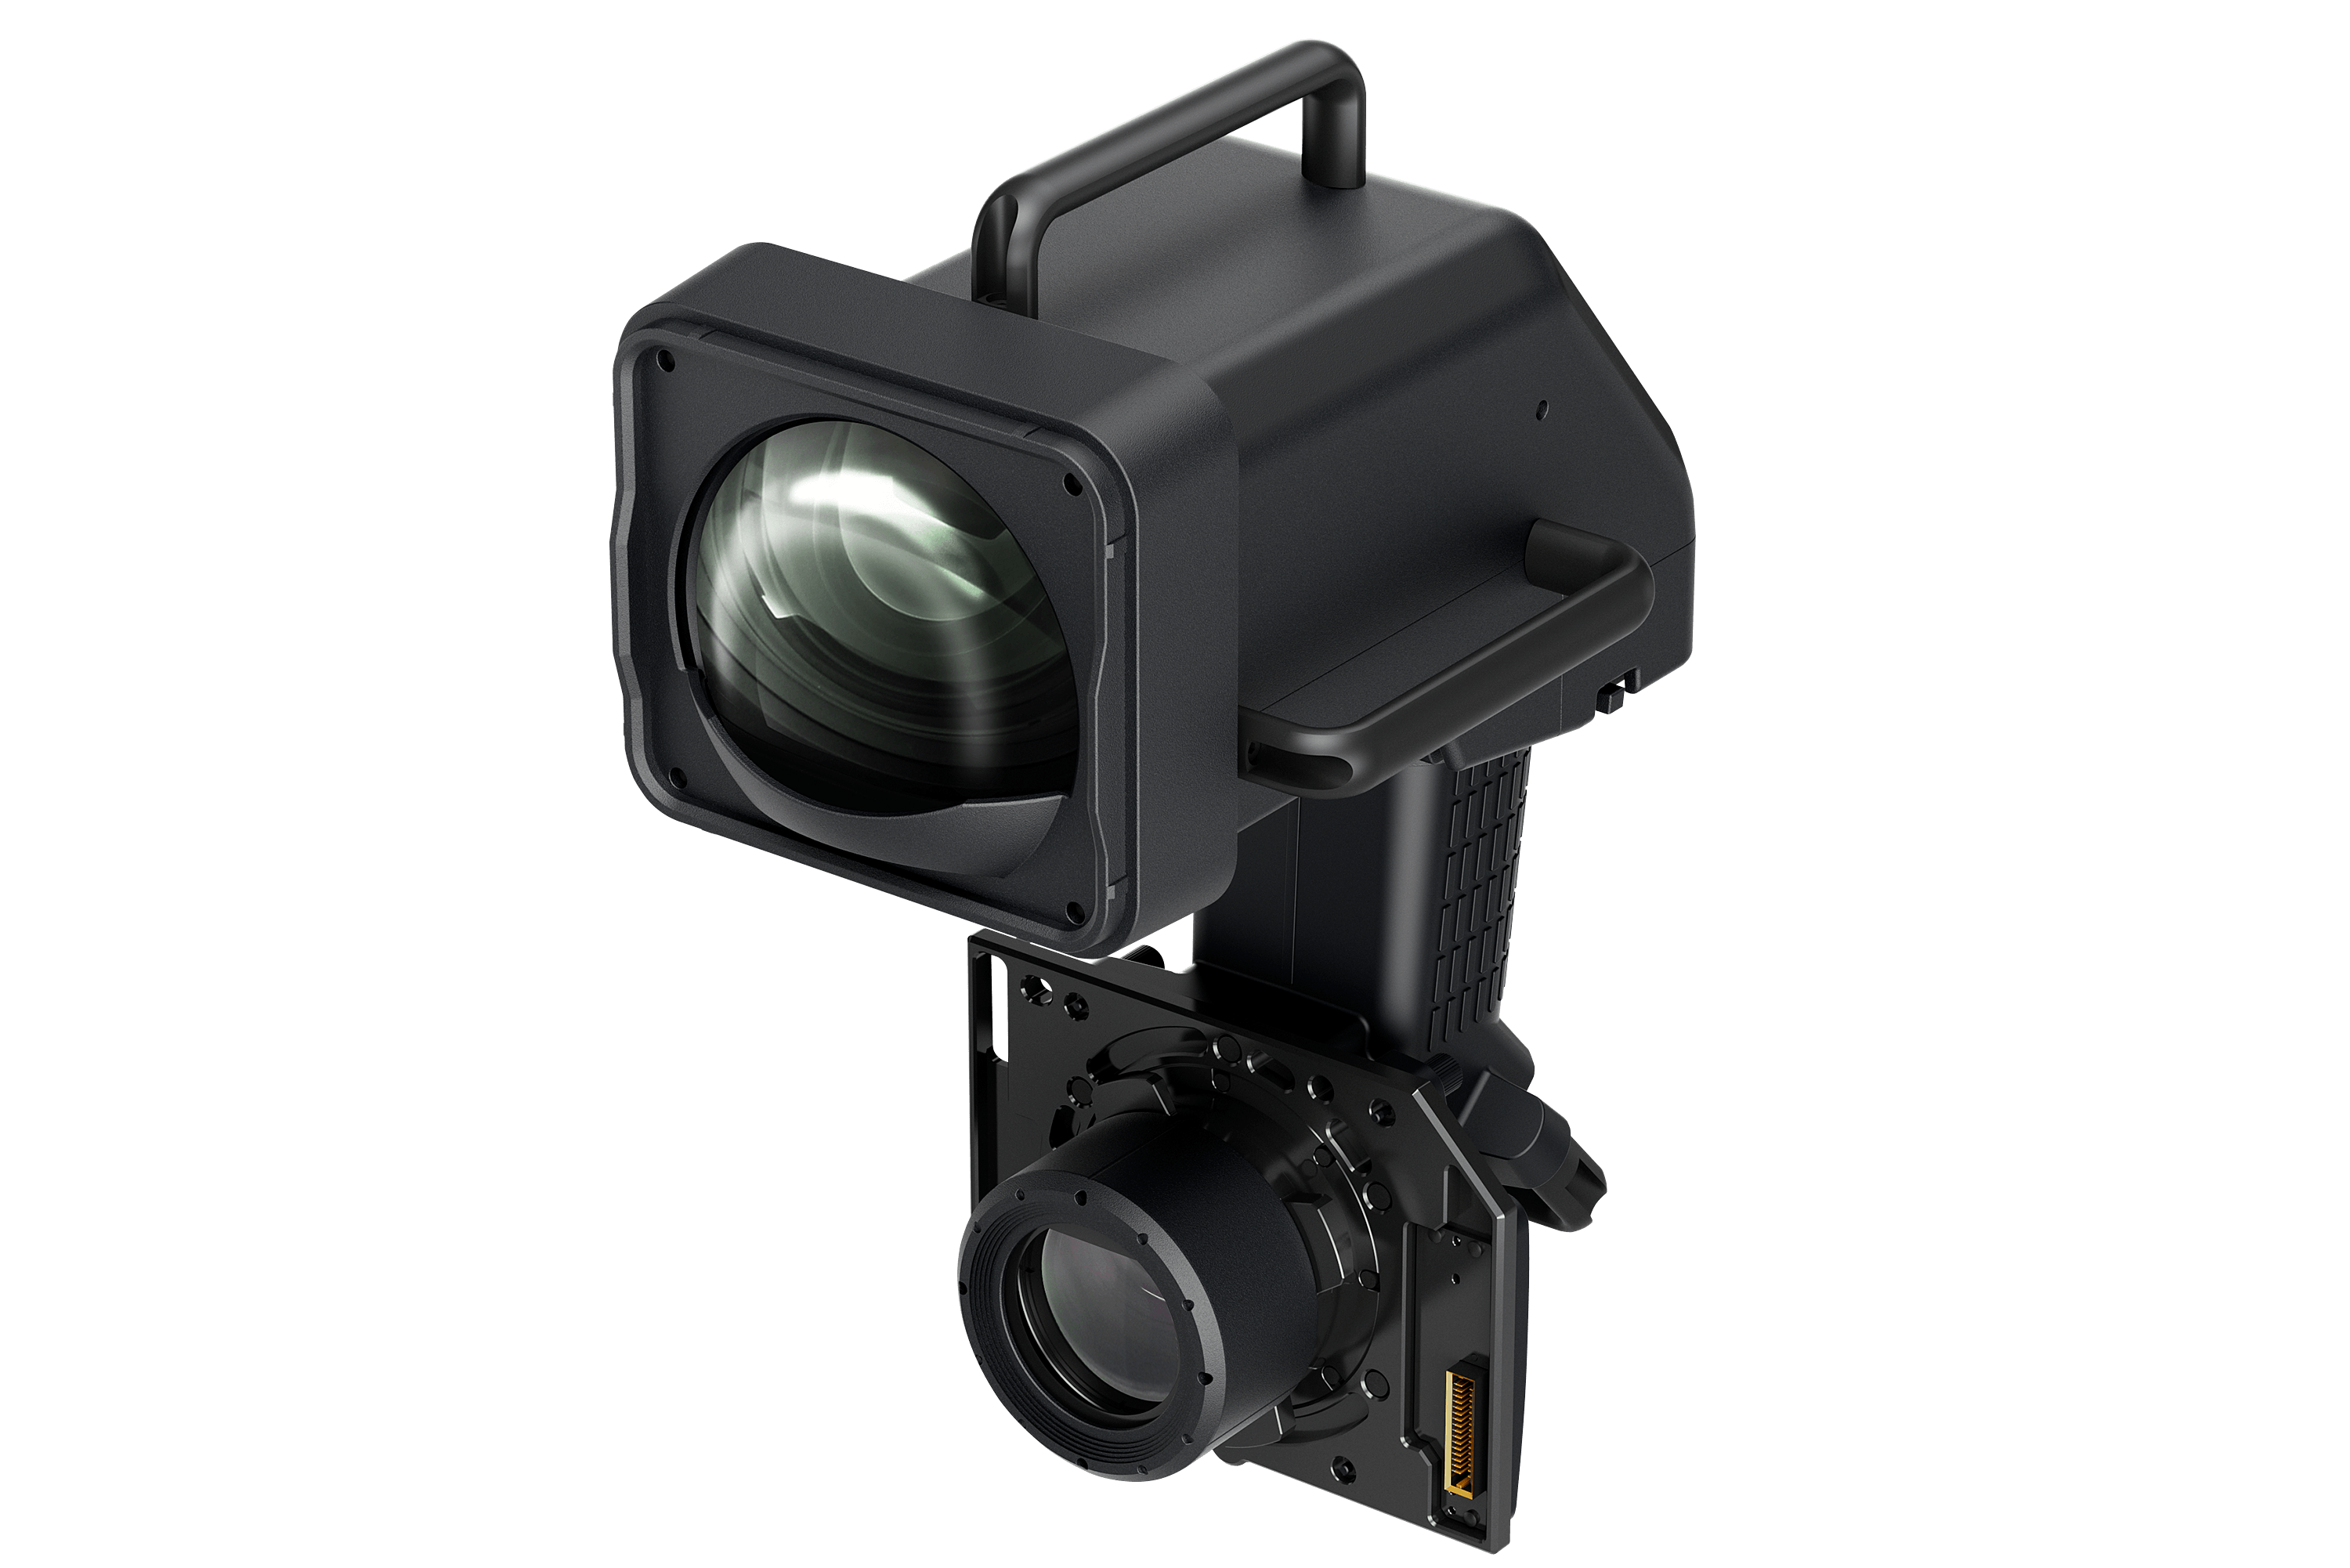 Lens - ELPLX03 - UST Lens L30000U series